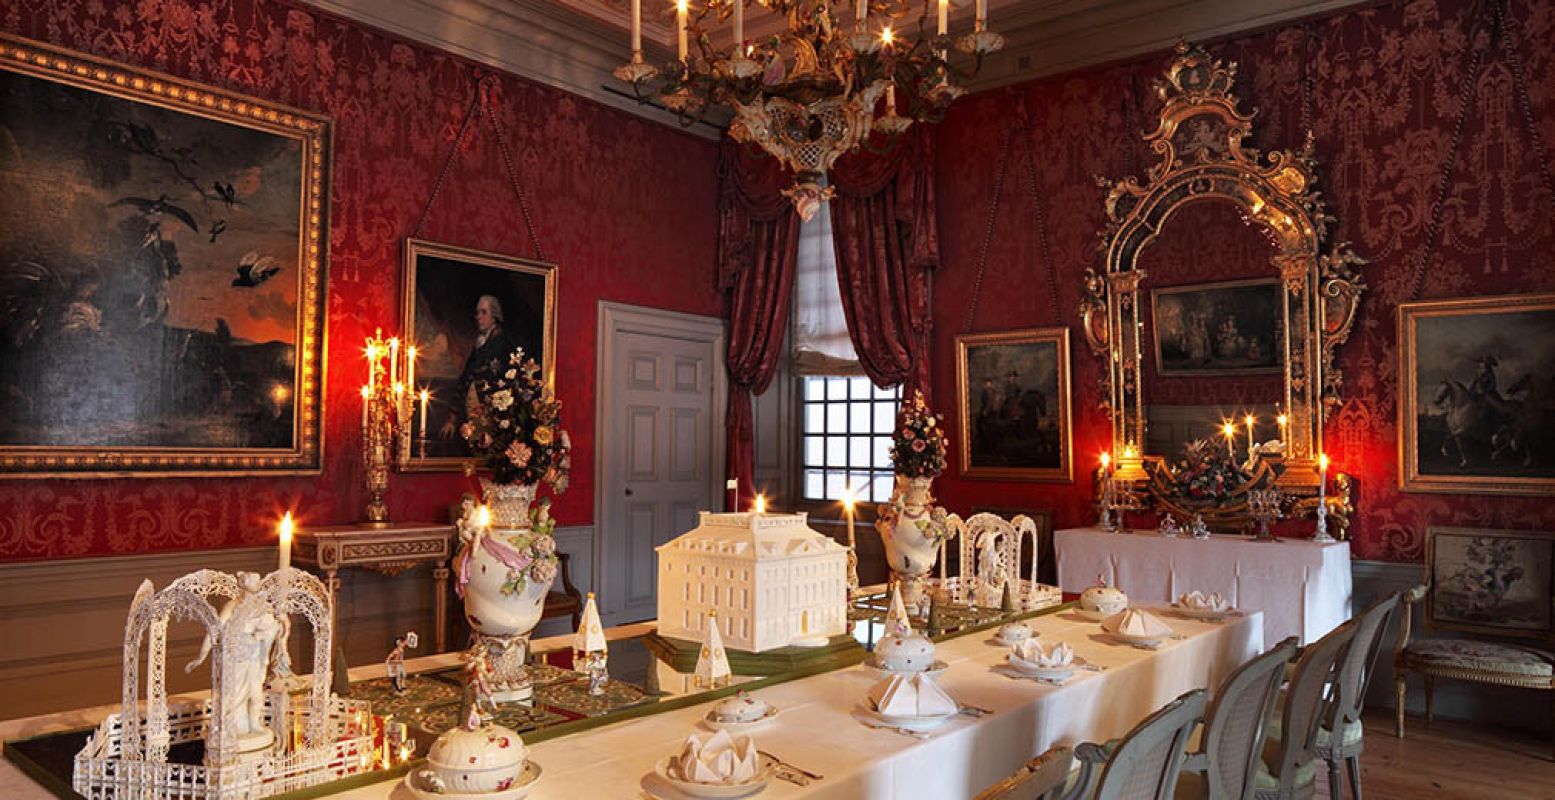 De vertrekken in Paleis Het Loo zijn feestelijk versierd en de tafels gedekt met het mooiste servies. Foto: M. Elsevier Stokmans.